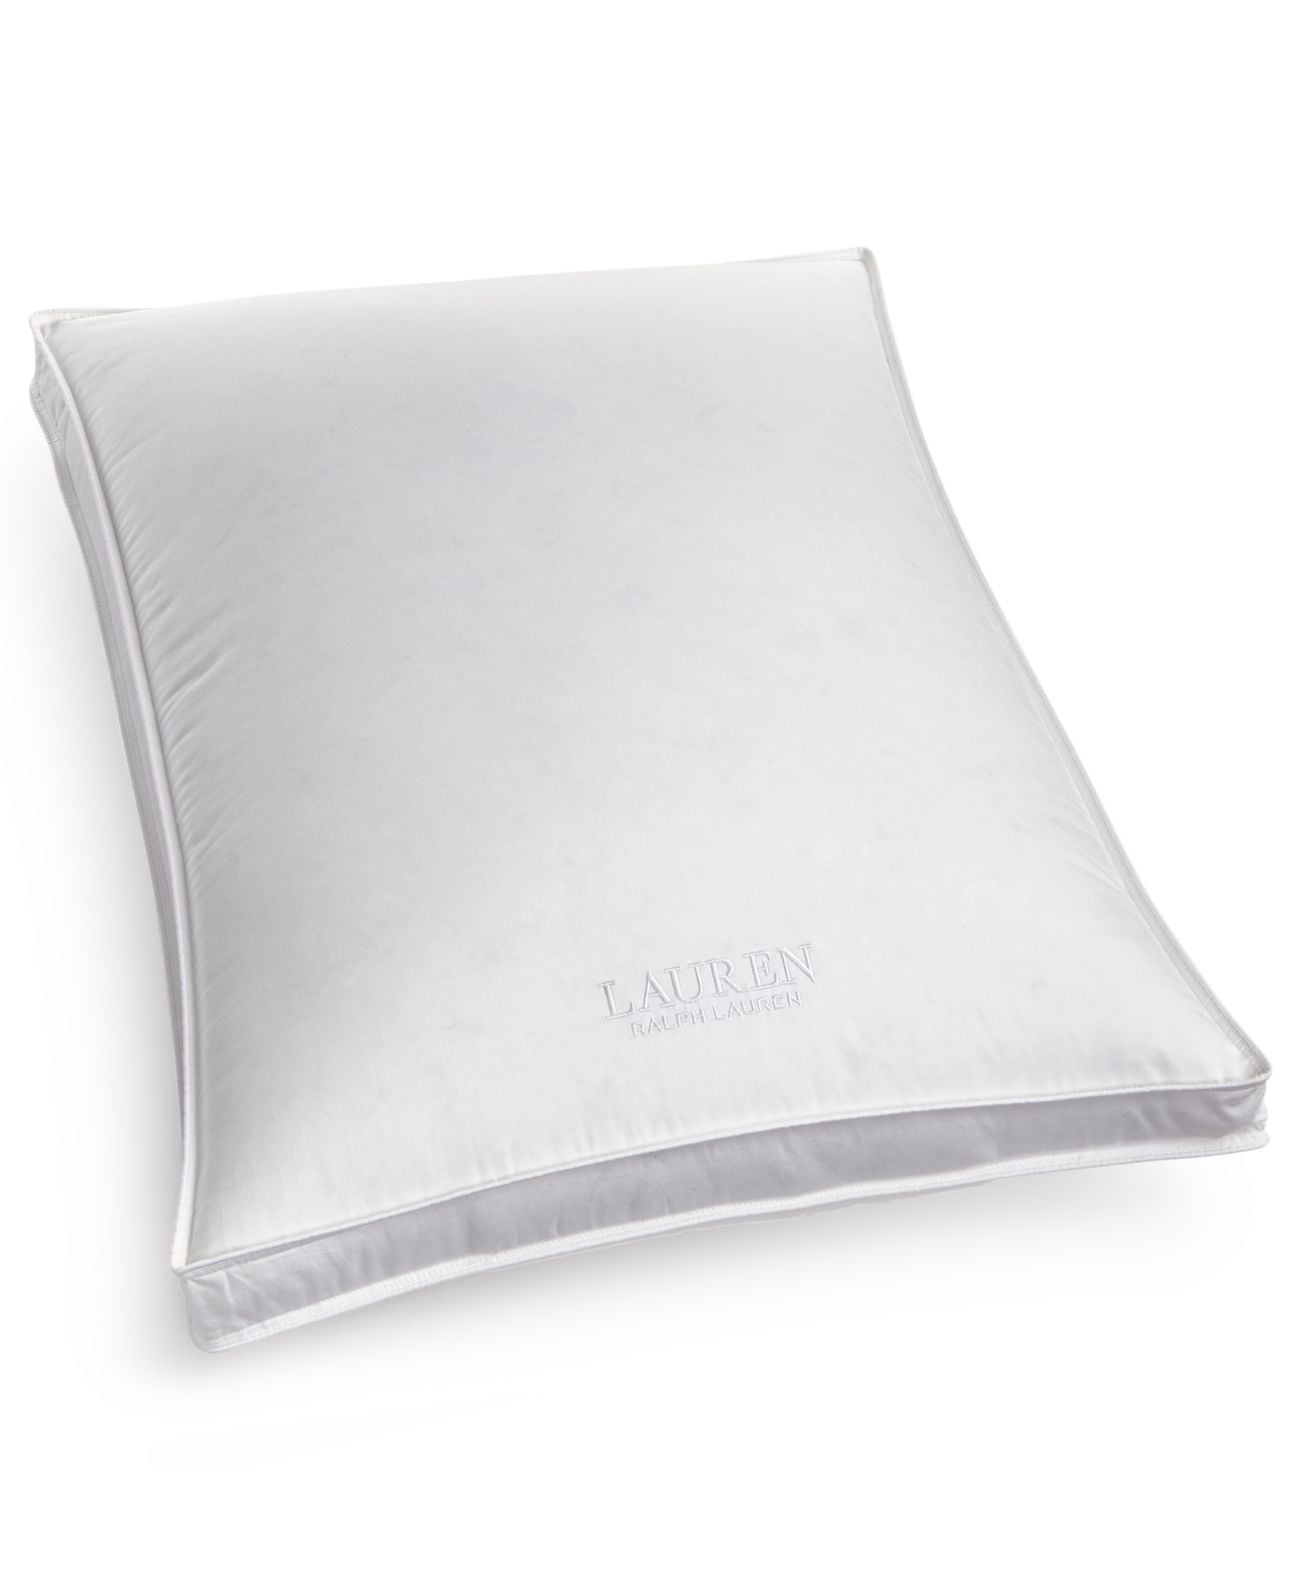 Lauren Ralph Lauren Down Pillow Standard Firm Density Bronze Comfort, White  